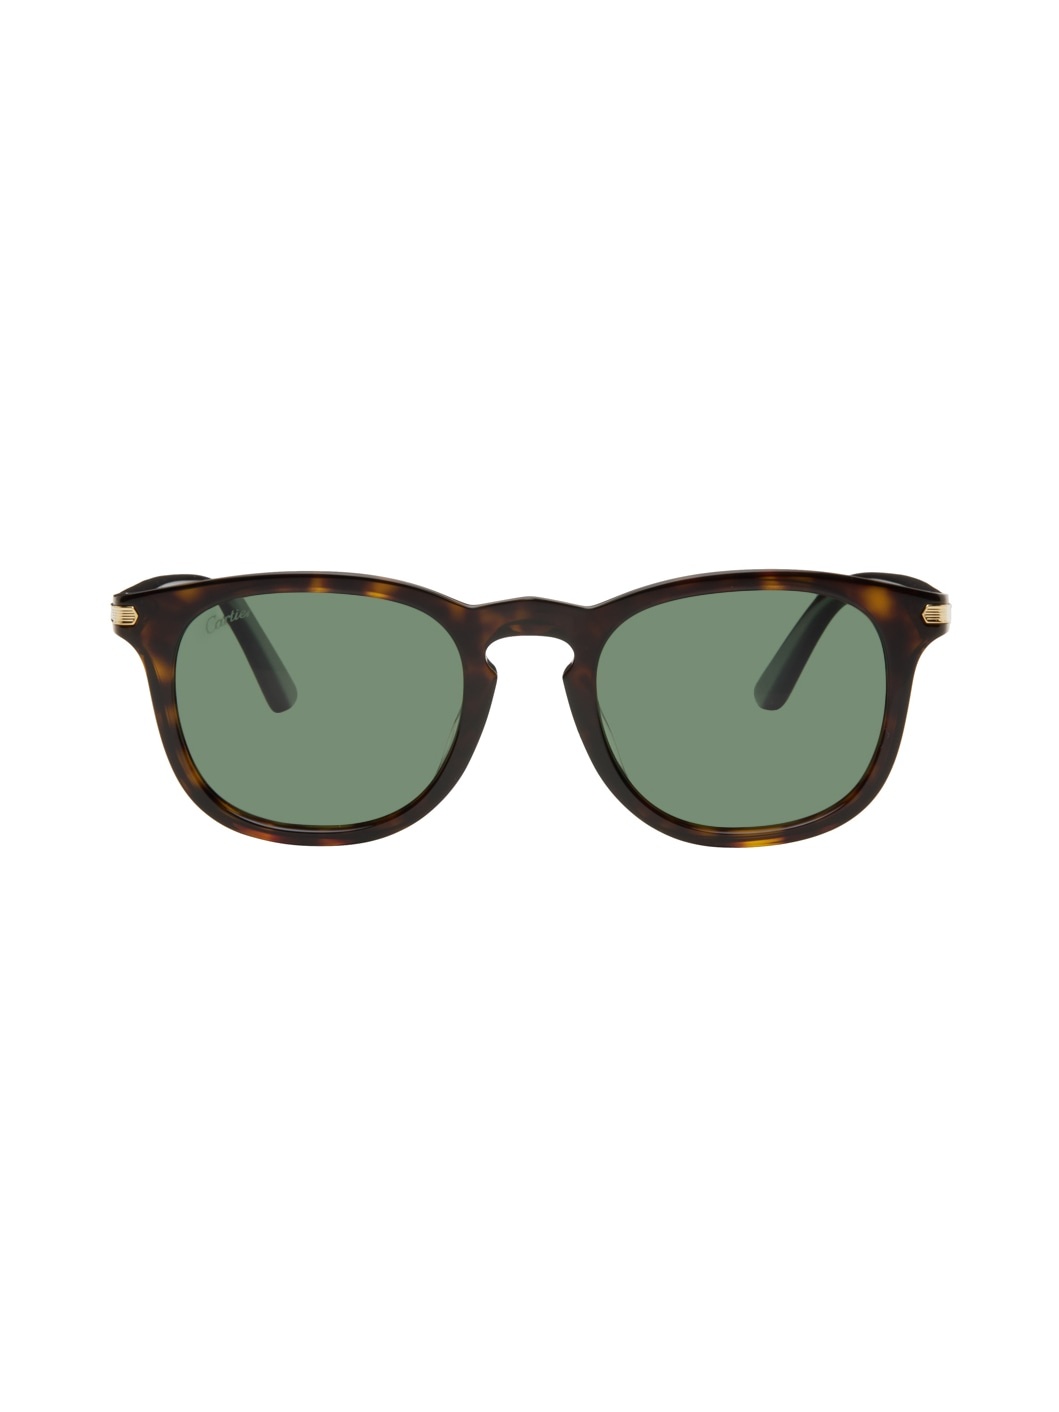 Tortoiseshell Round Sunglasses - 1